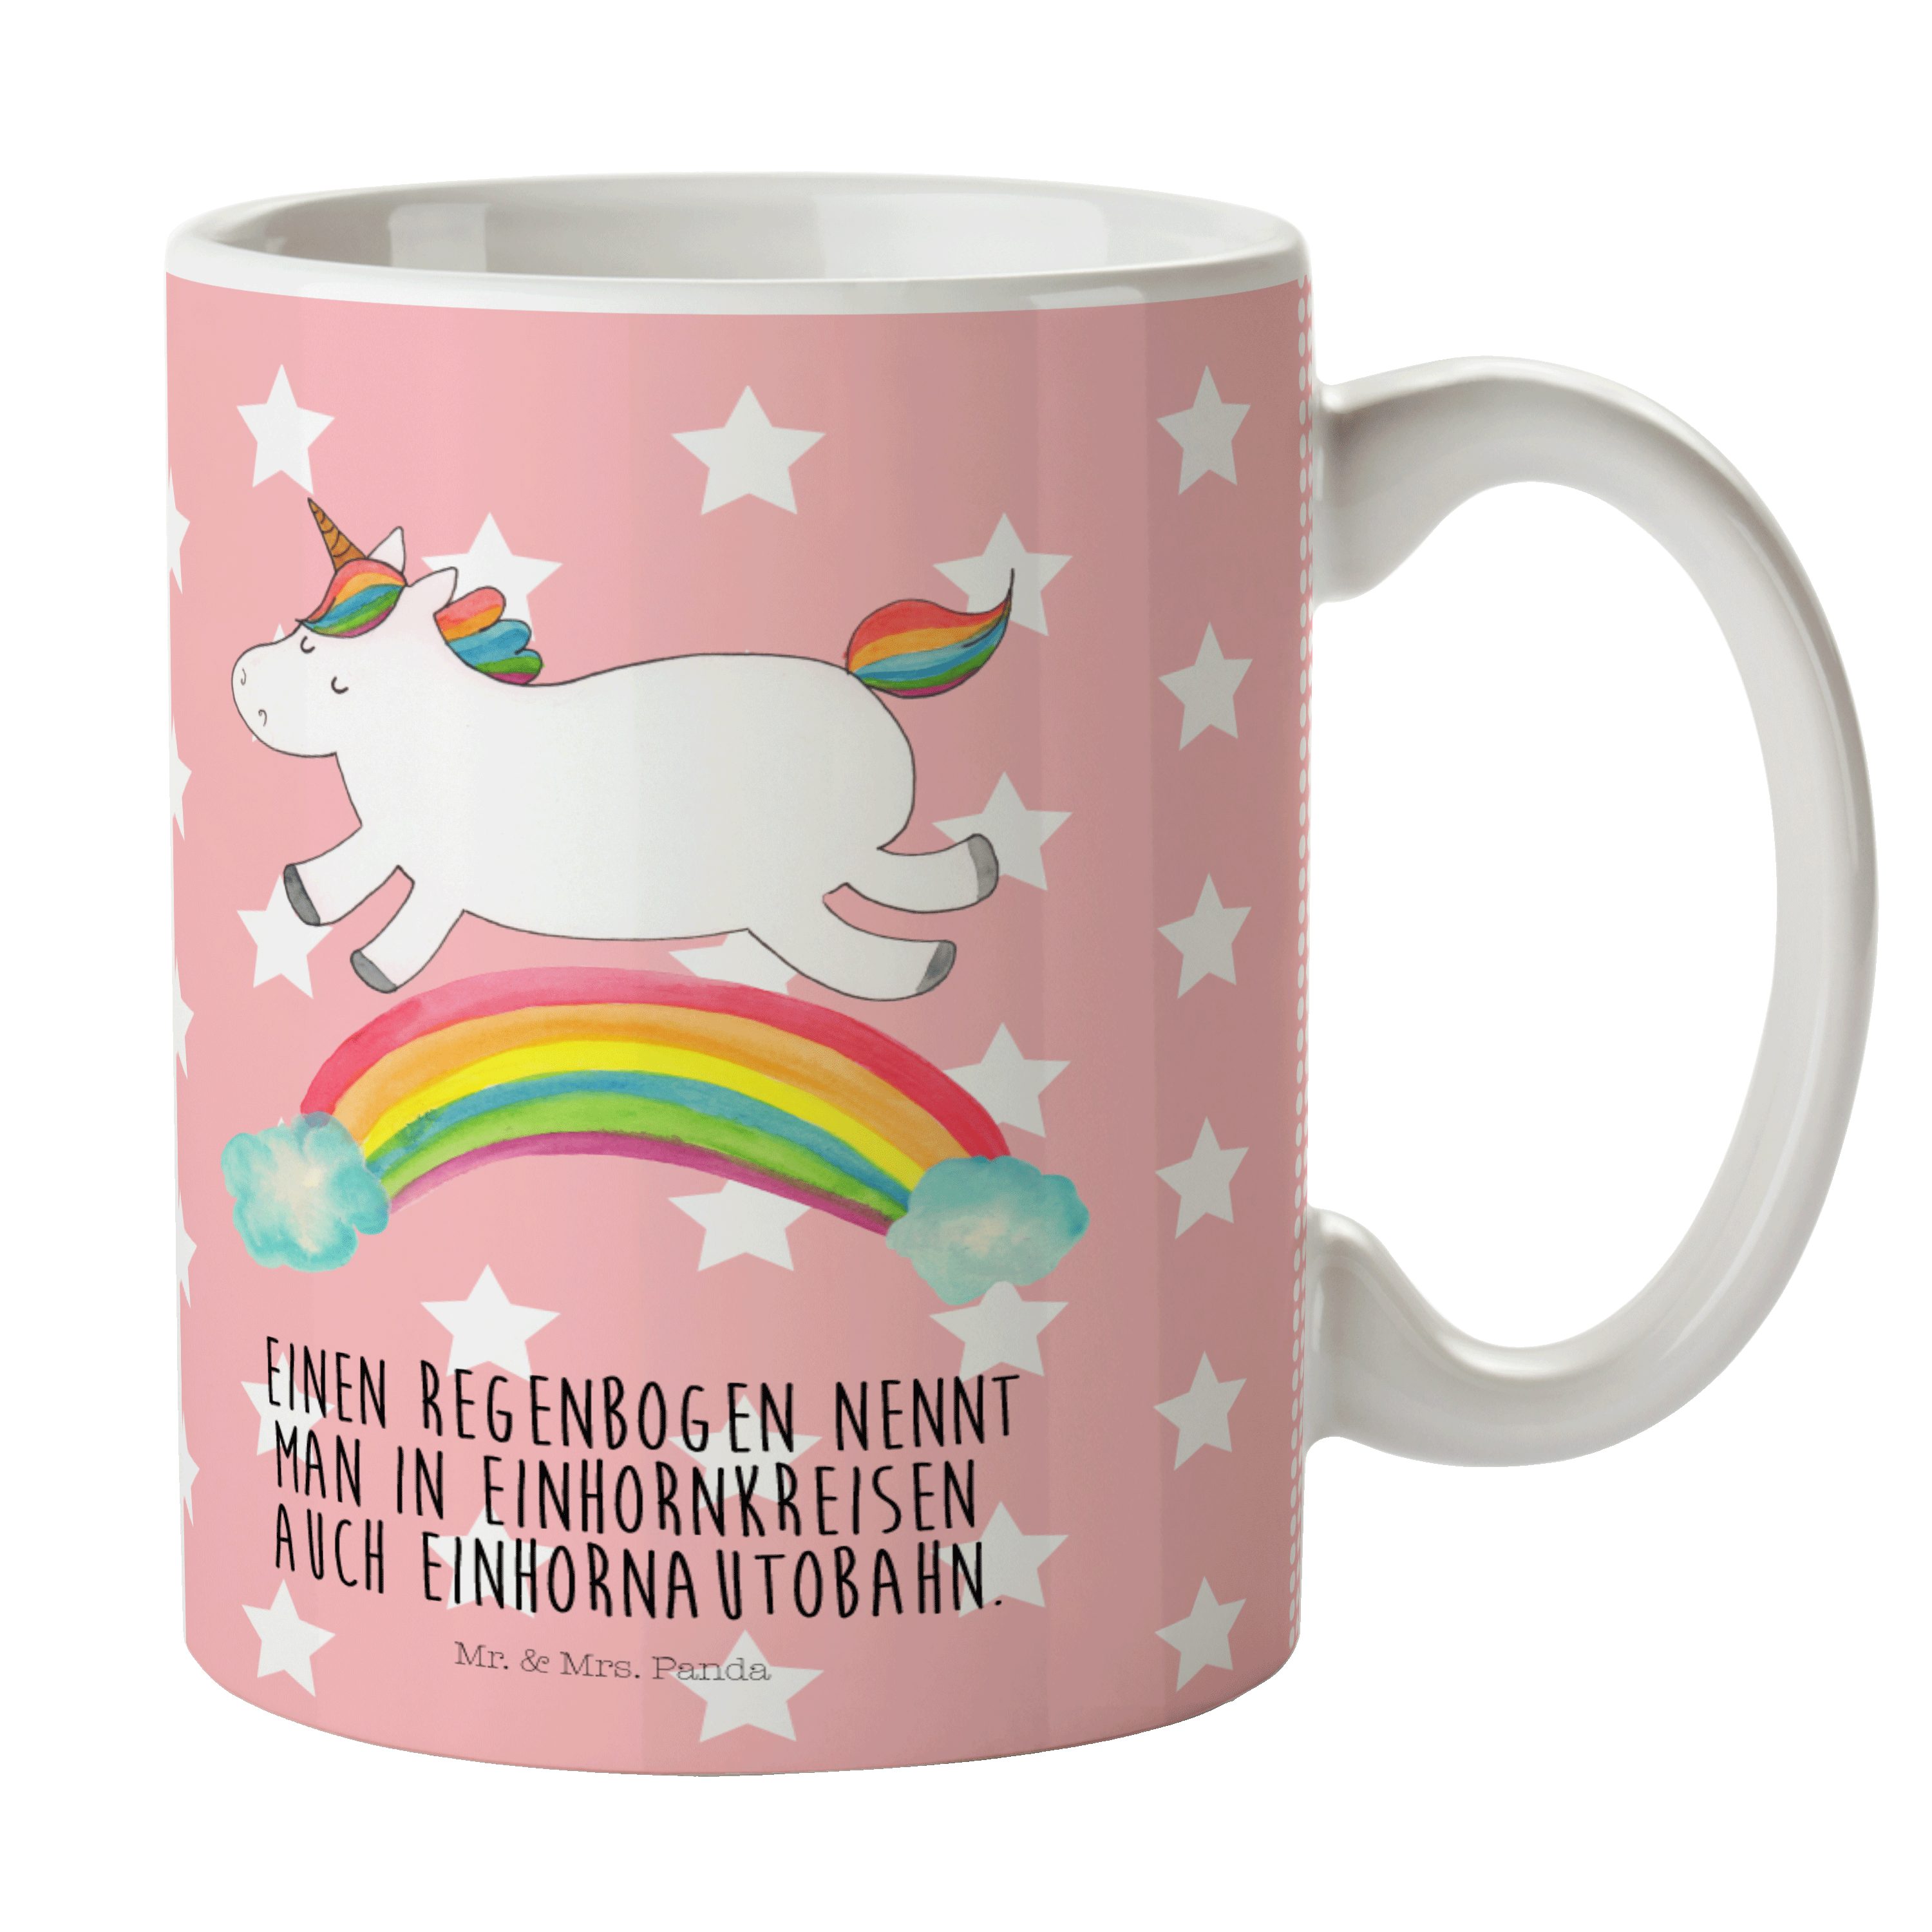 Mr. & Mrs. Panda Tasse Einhorn Regenbogen - Rot Pastell - Geschenk, Tasse Motive, Kaffeetass, Keramik